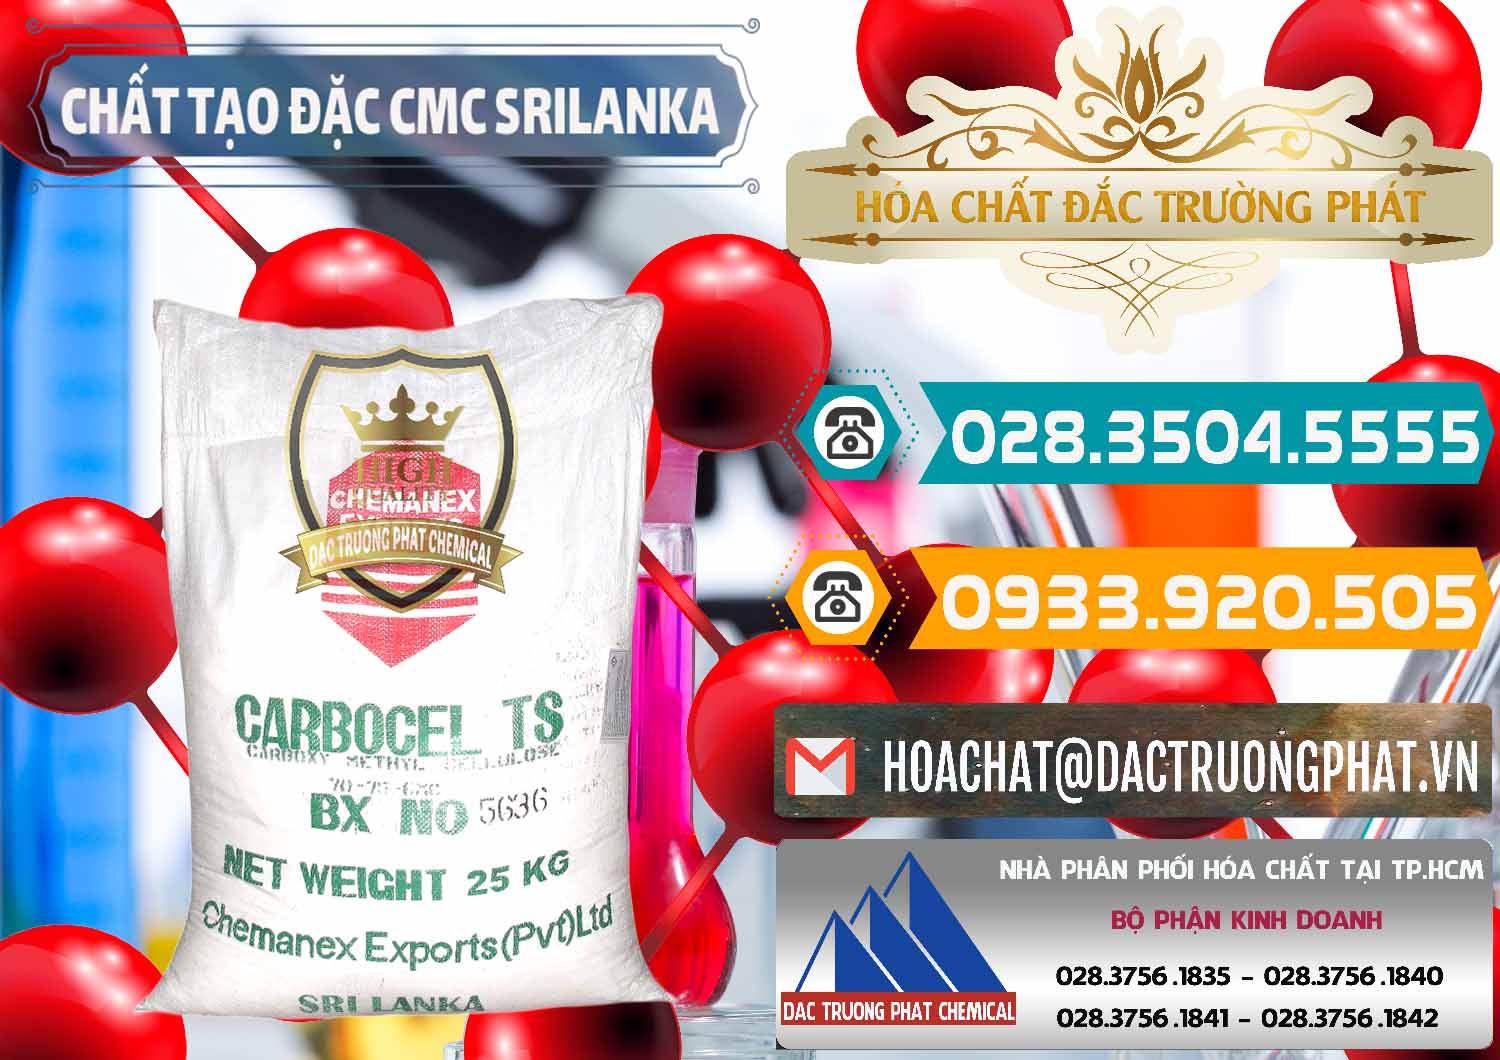 Cty chuyên bán và cung cấp Chất Tạo Đặc CMC - Carboxyl Methyl Cellulose Srilanka - 0045 - Cty cung cấp và phân phối hóa chất tại TP.HCM - congtyhoachat.vn